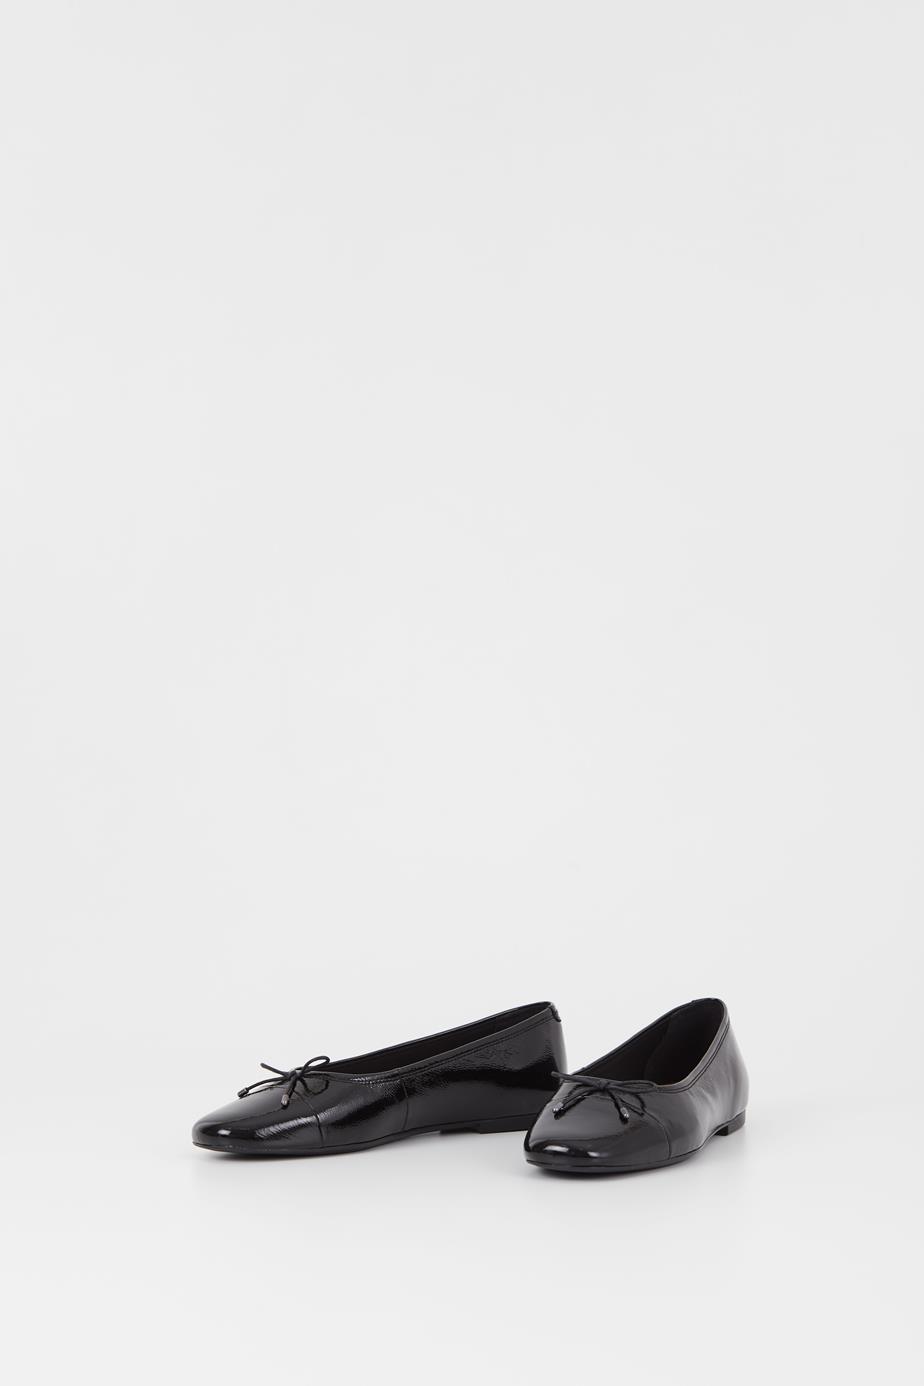 Jolın shoes Black patent leather